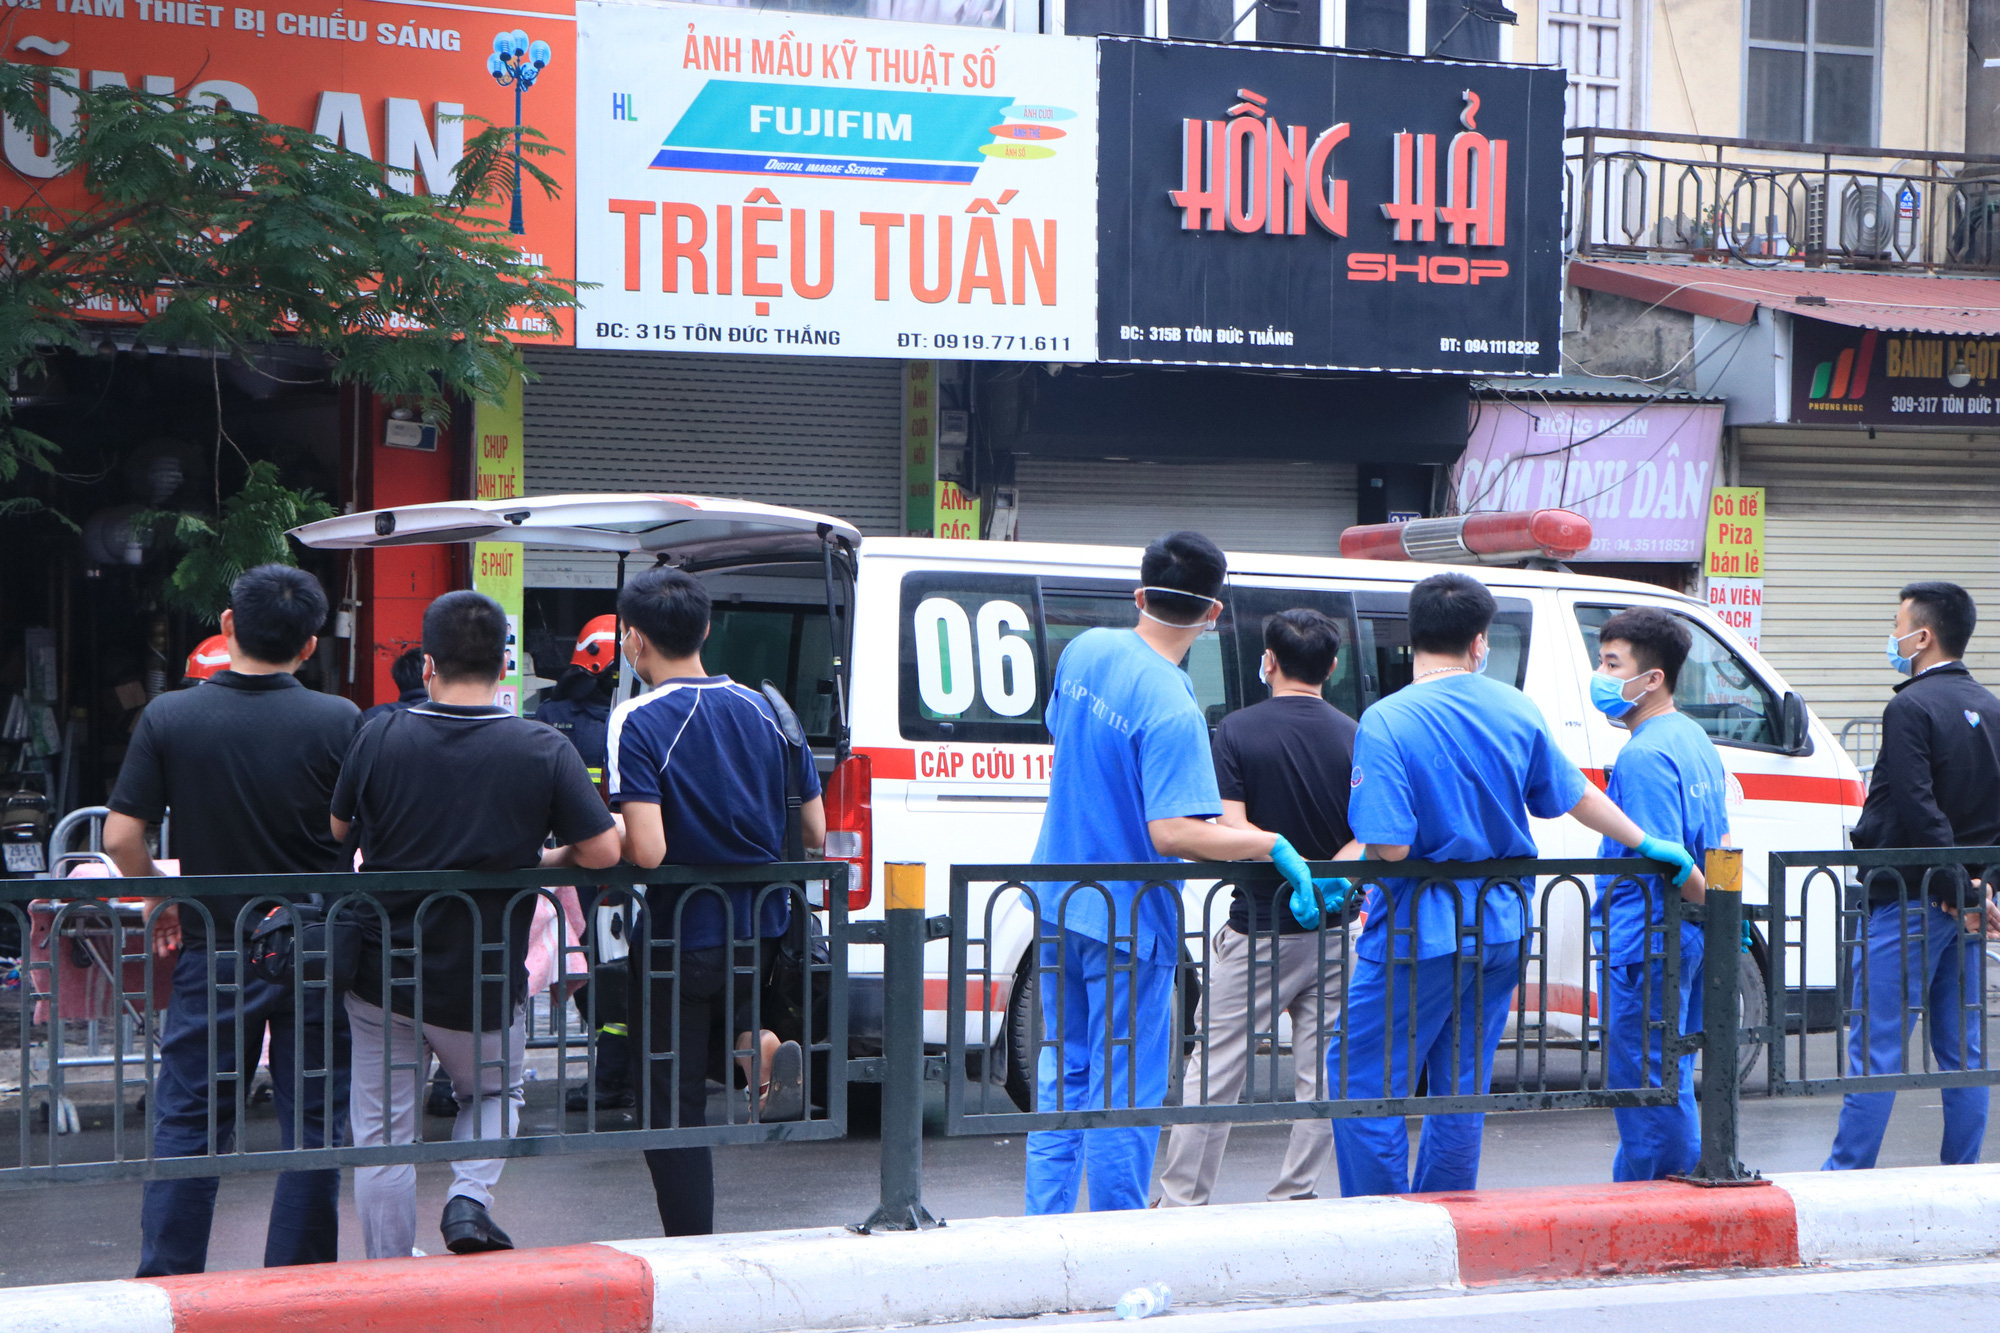 Vụ cháy 4 người tử vong ở Hà Nội: Chủ tịch Chu Ngọc Anh chỉ đạo điều tra làm rõ nguyên nhân - Ảnh 1.